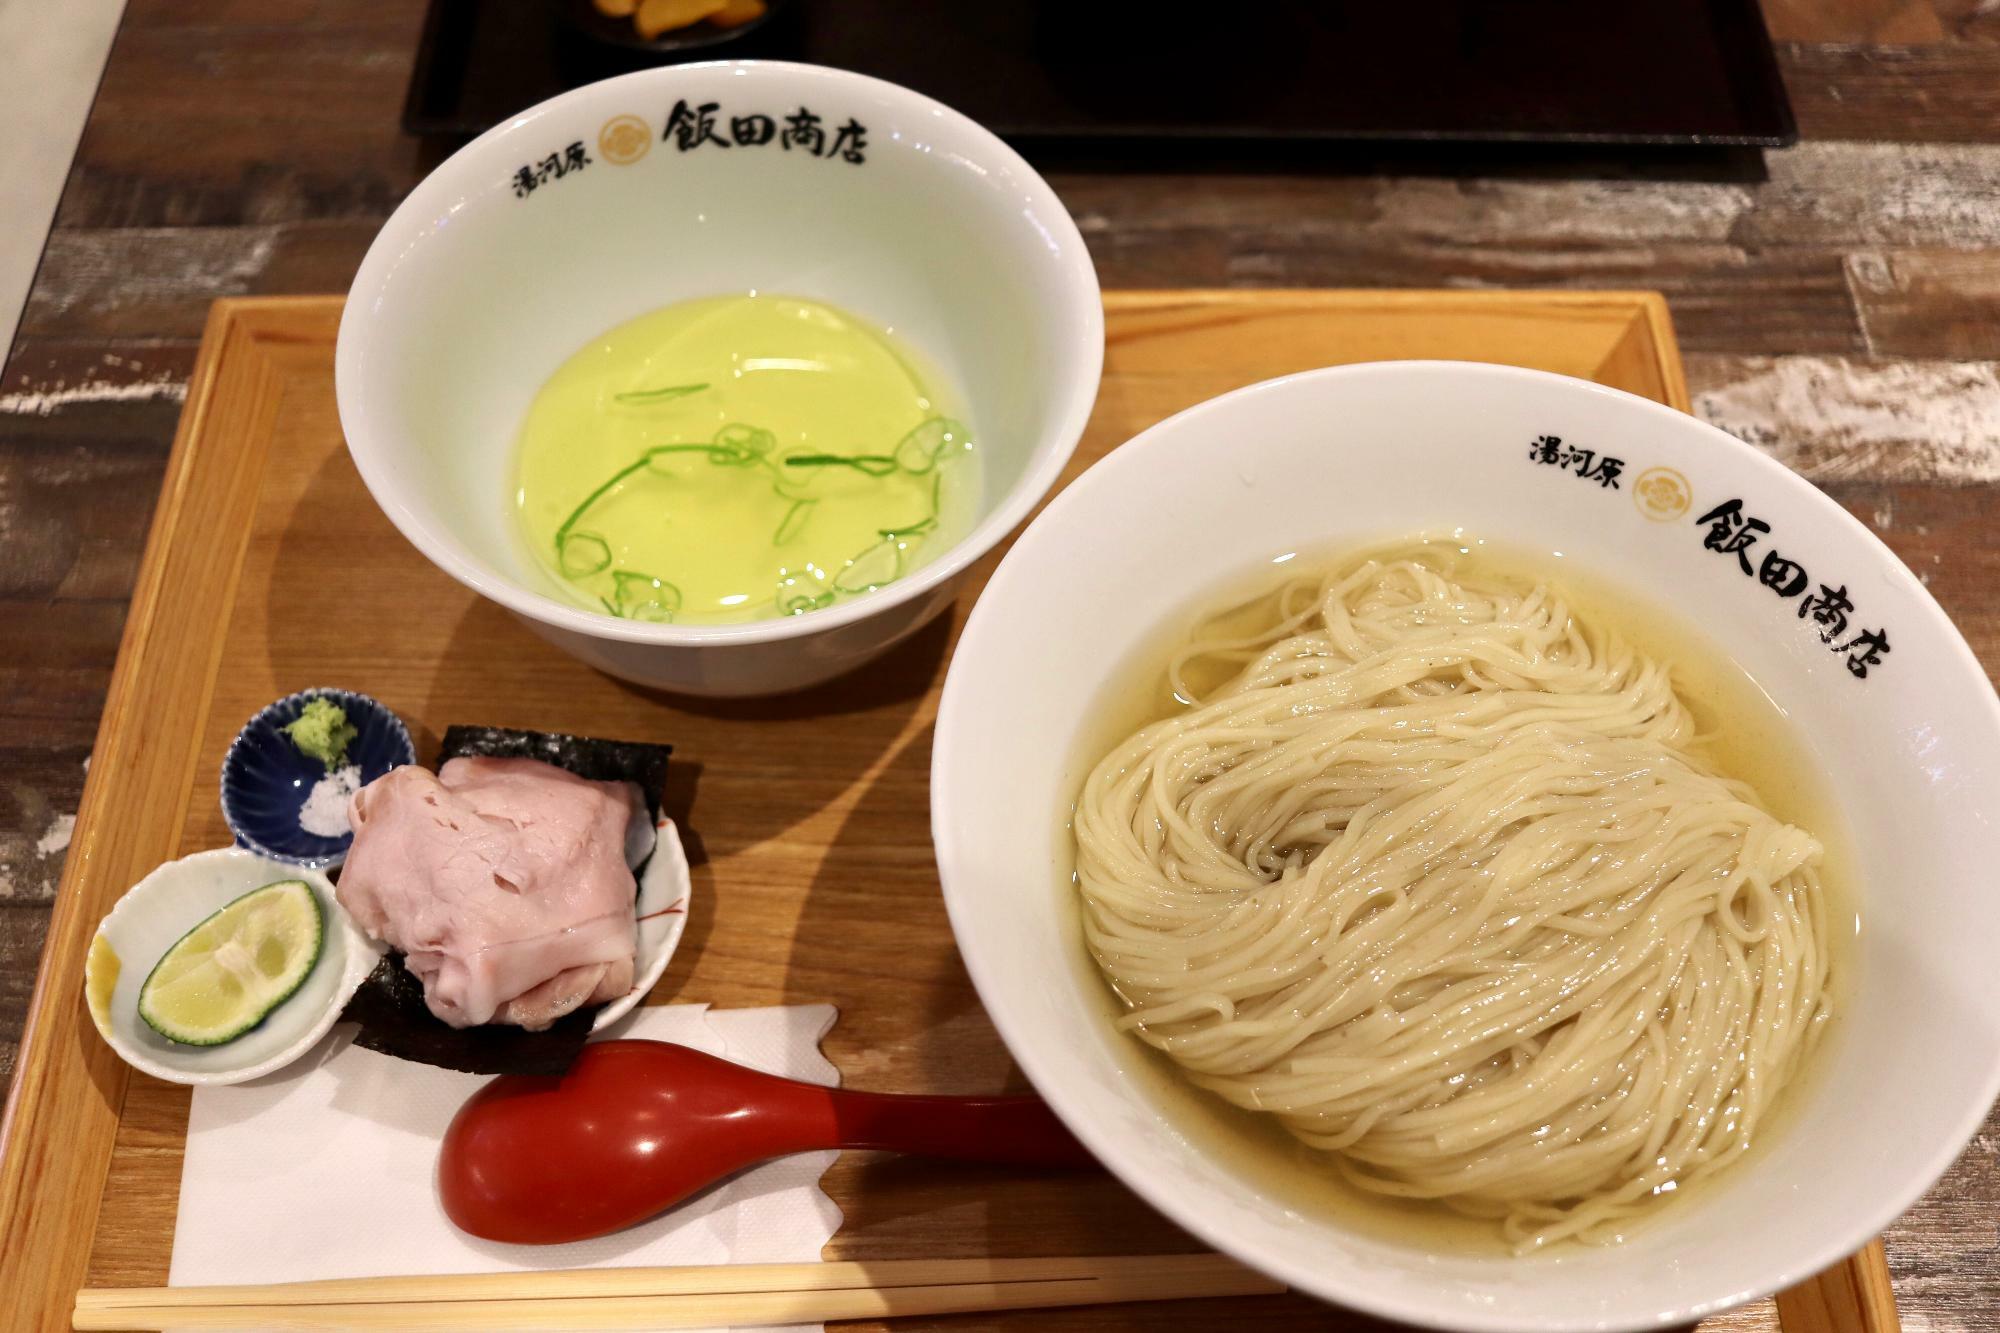 「戸田塩のつけ麺」1,600円税込